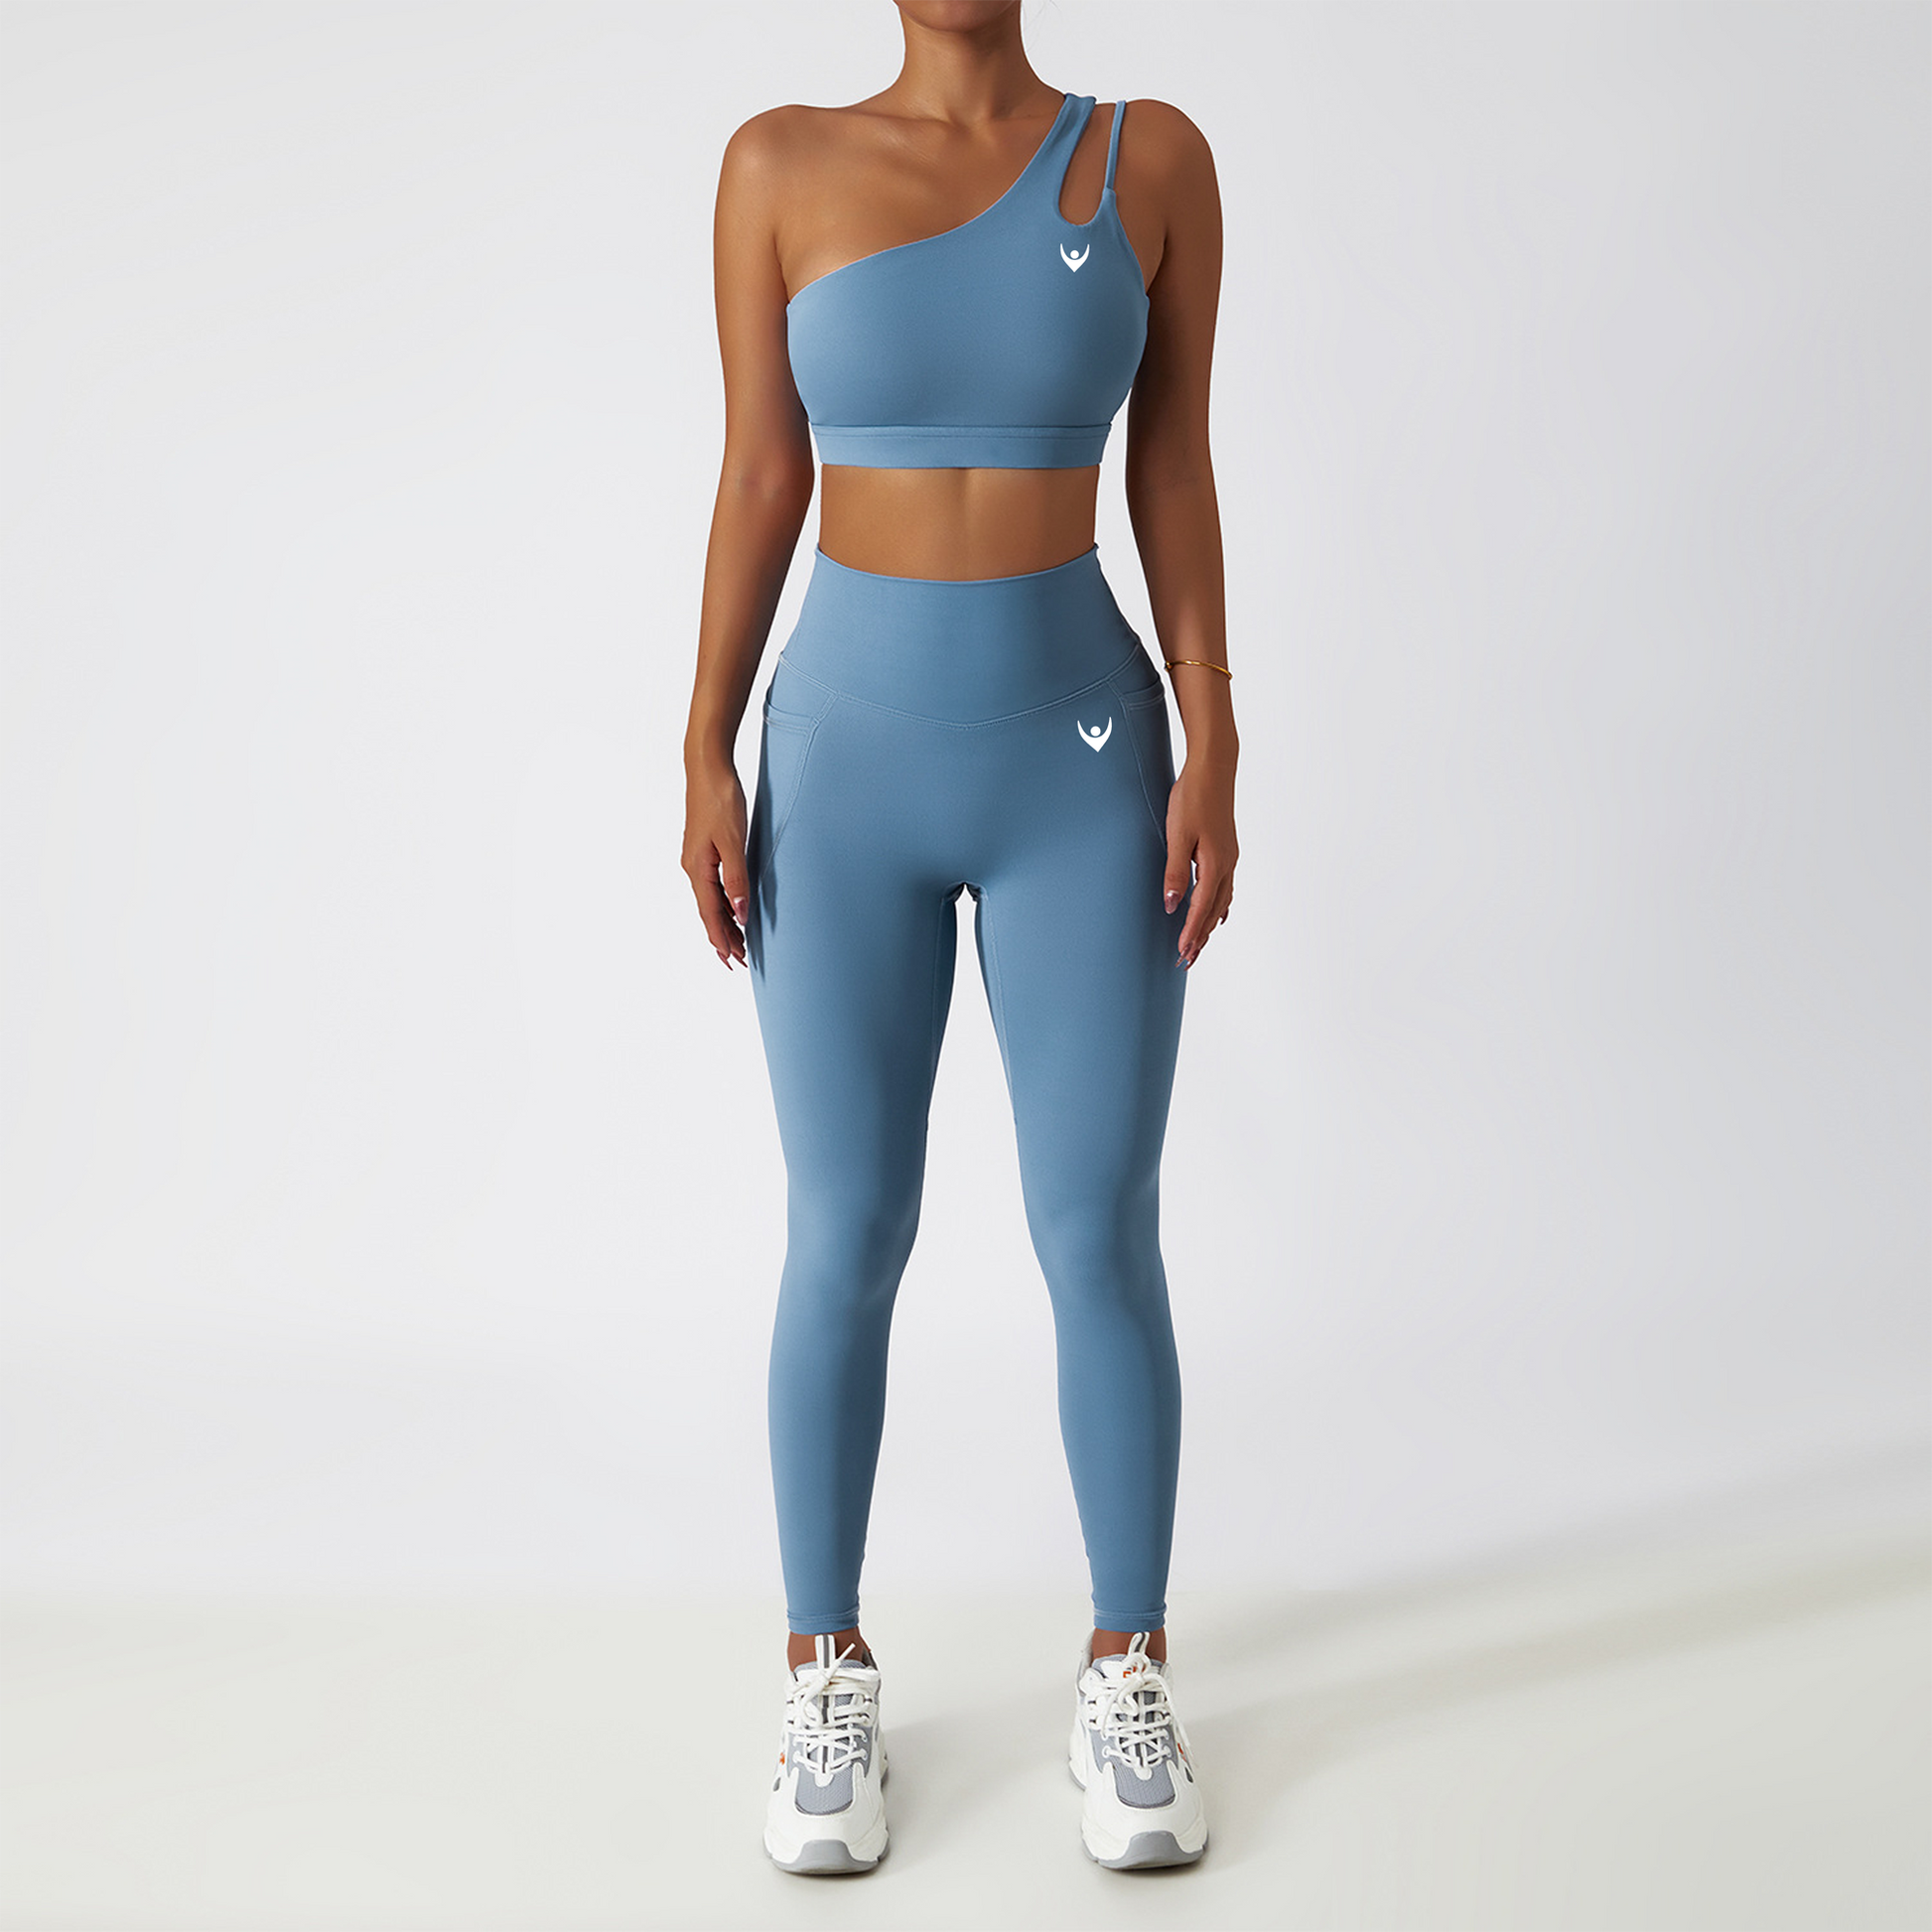 Diana Sports Bra & Leggings Set – Ngu activewear